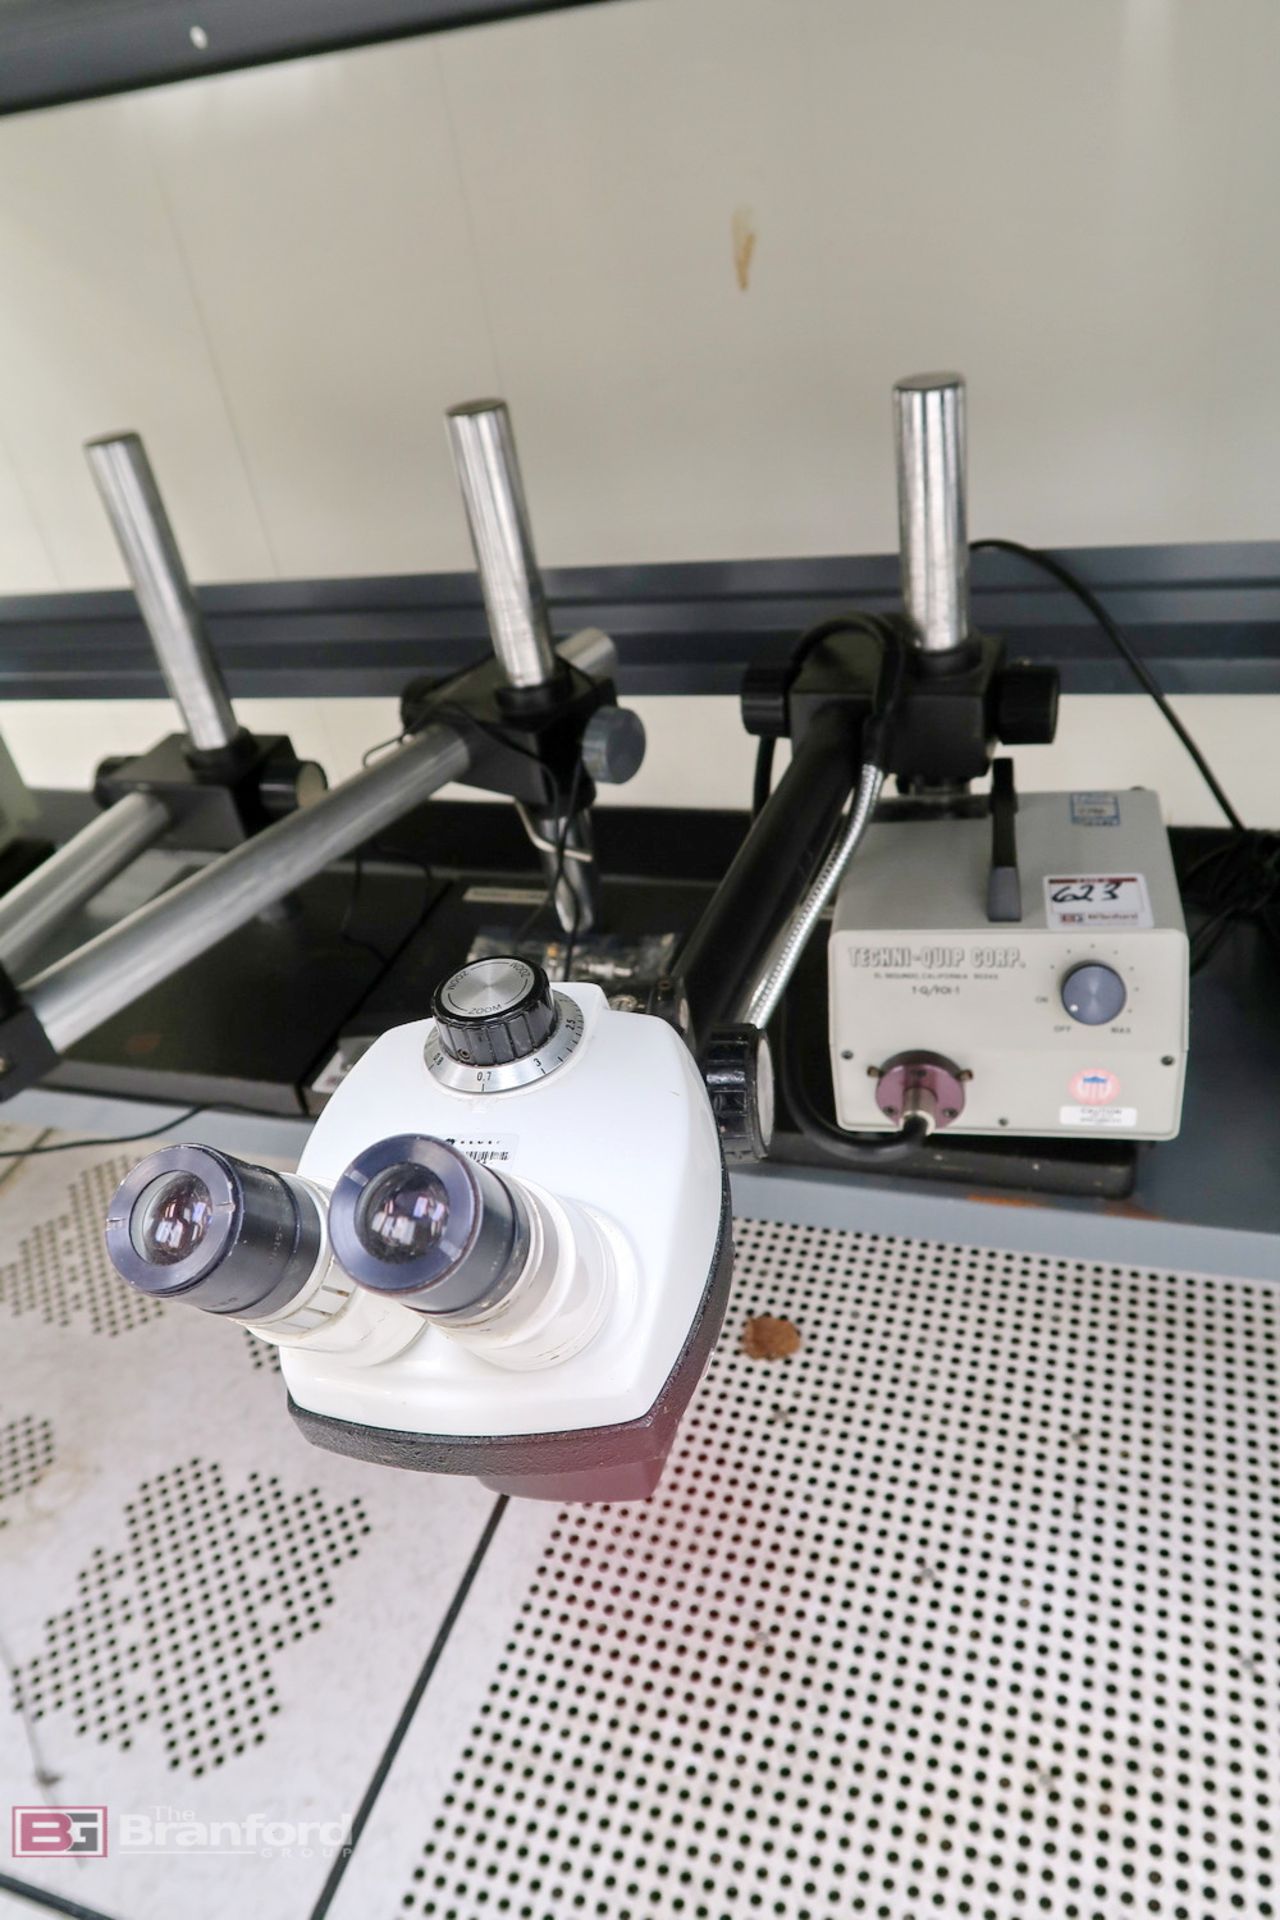 Stereozoom microscope w/ Techni-Quip light source